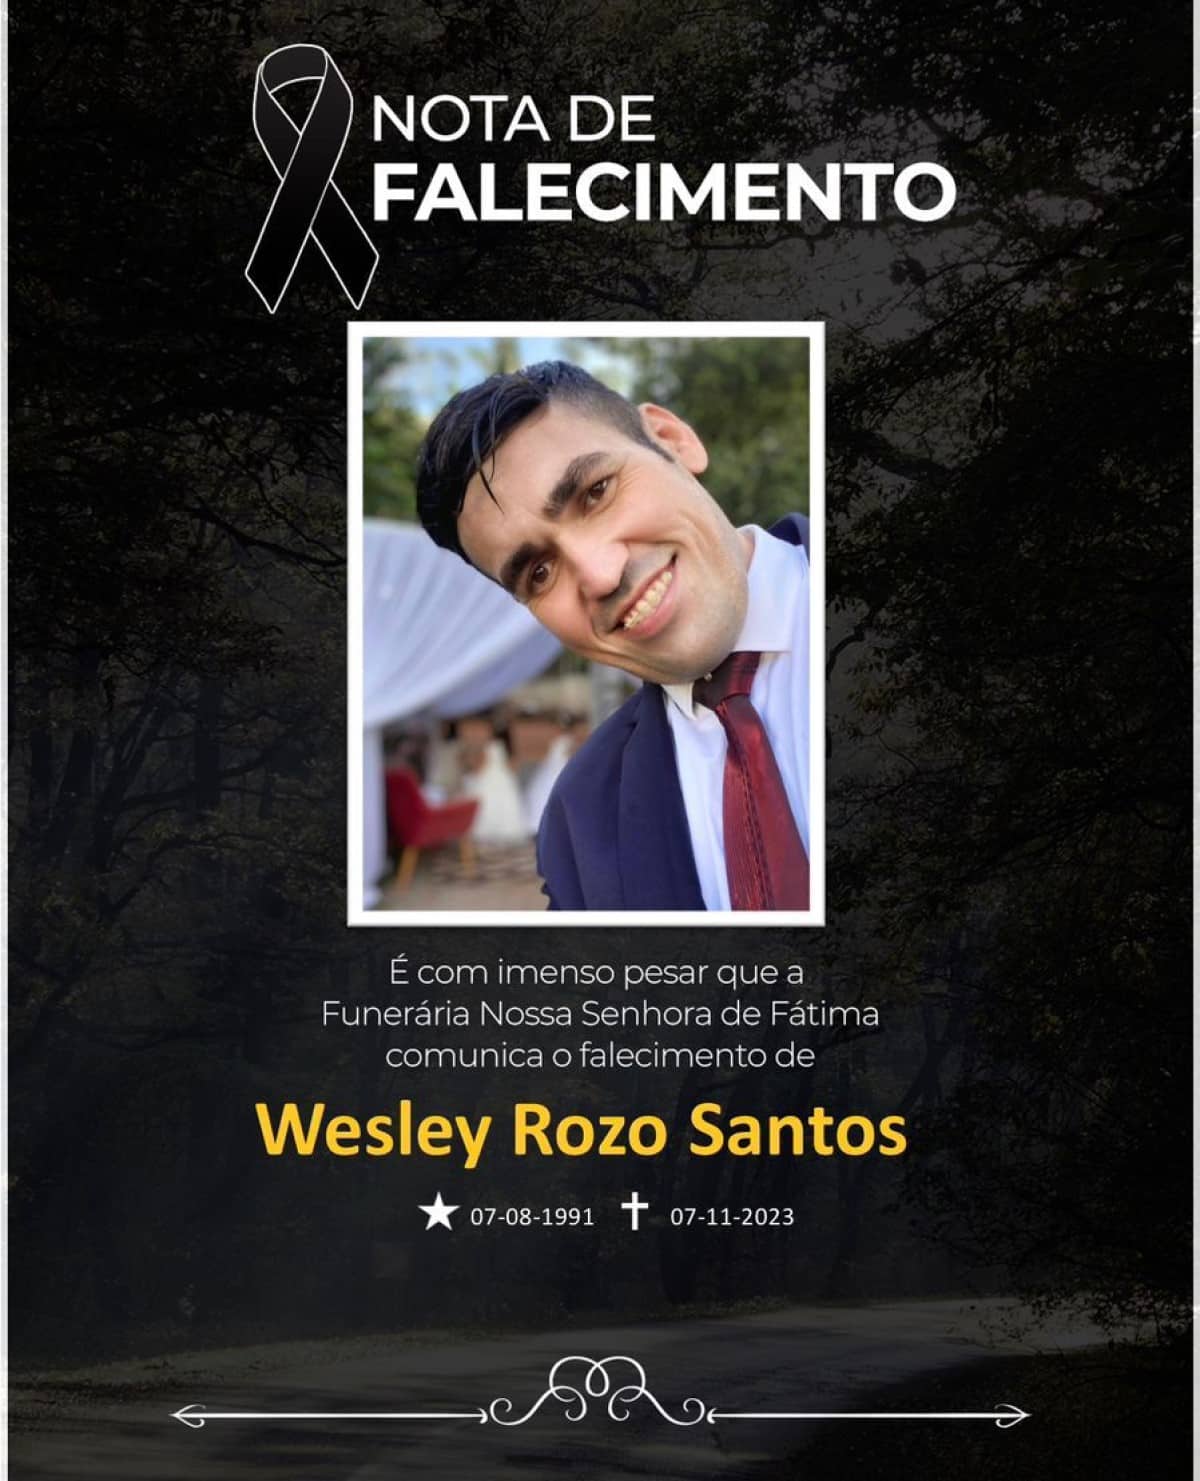 O corpo do empresário Weley Rozo dos Santos, 32 anos, que morreu vítima de acidente de trânsito em Lucas do Rio Verde - MT, será velado a partir das 23h00 desta quarta-feira (08) na capela mortuária.